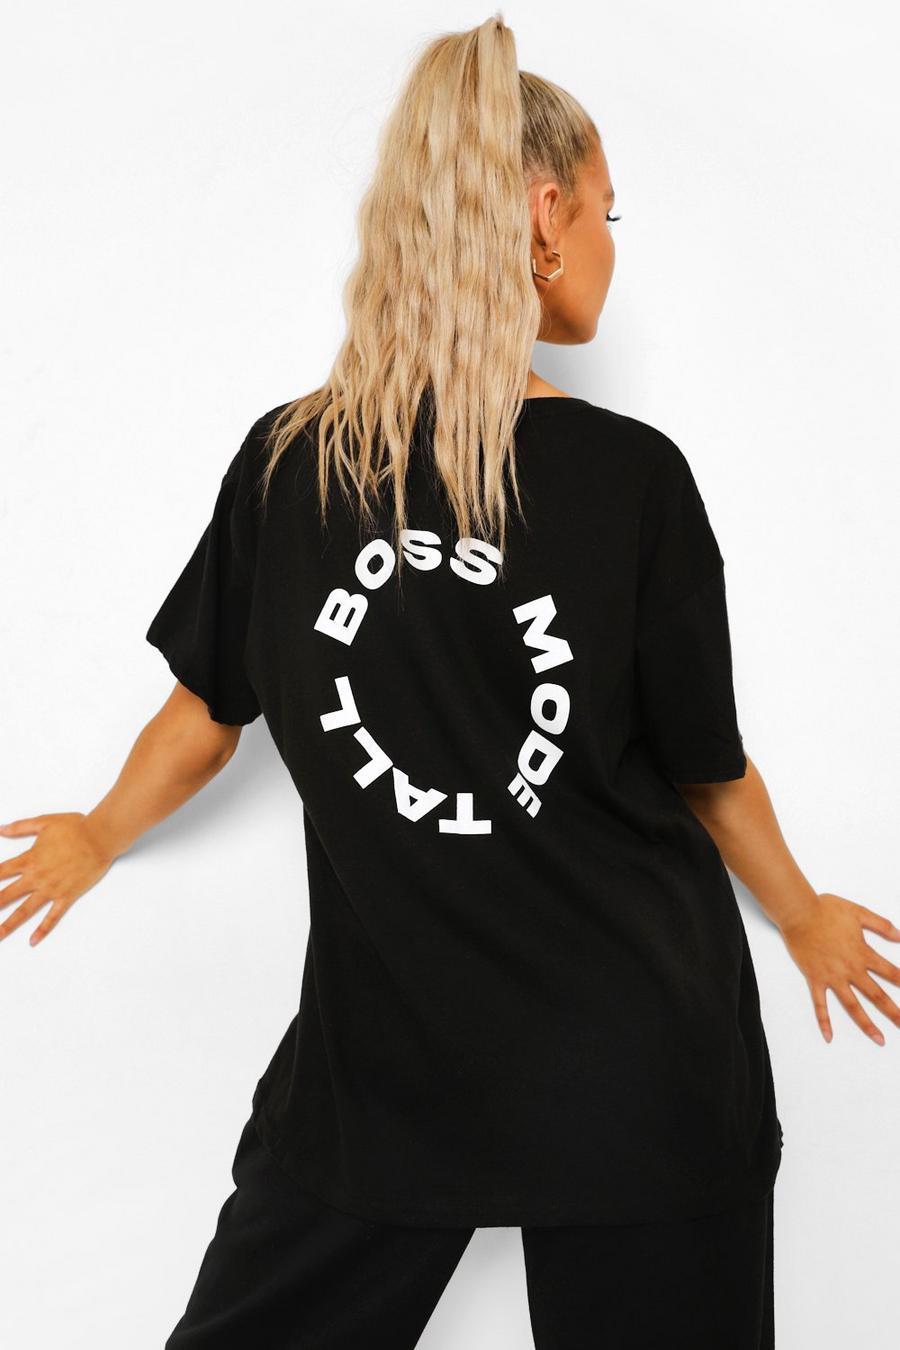 Camiseta con eslogan “Boss Mode” en la espalda Tall, Negro image number 1